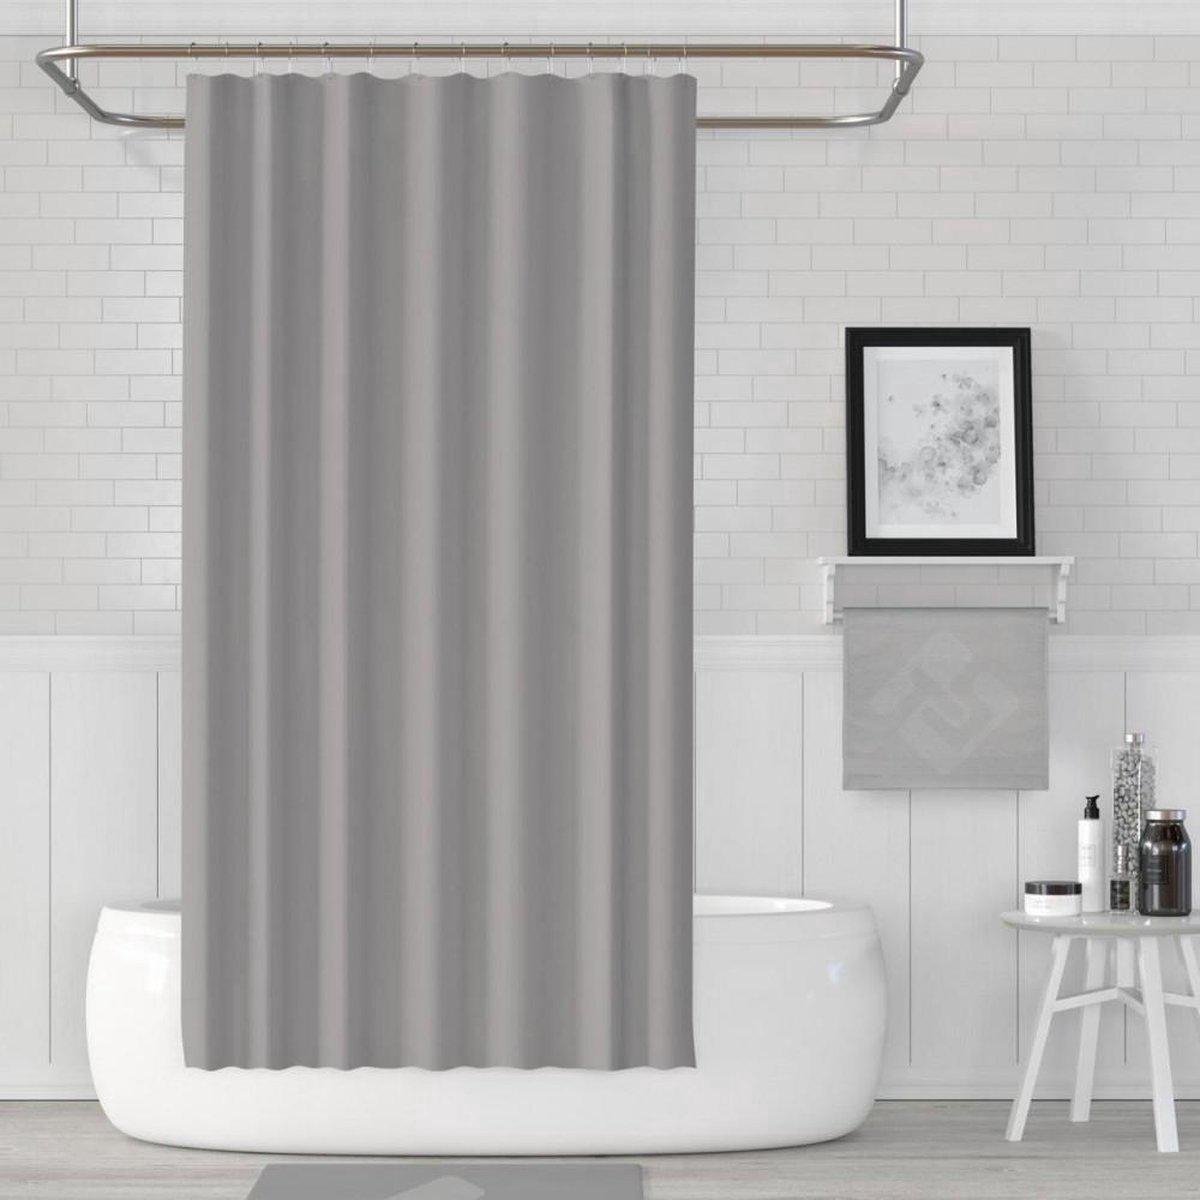 Zethome - Douchegordijn Grijs -120x200 cm - Polyester - Badkamer Gordijn - Shower Curtain - Waterdicht - Sneldrogend en Anti Schimmel - Wasbaar -Duurzaam - Grijs